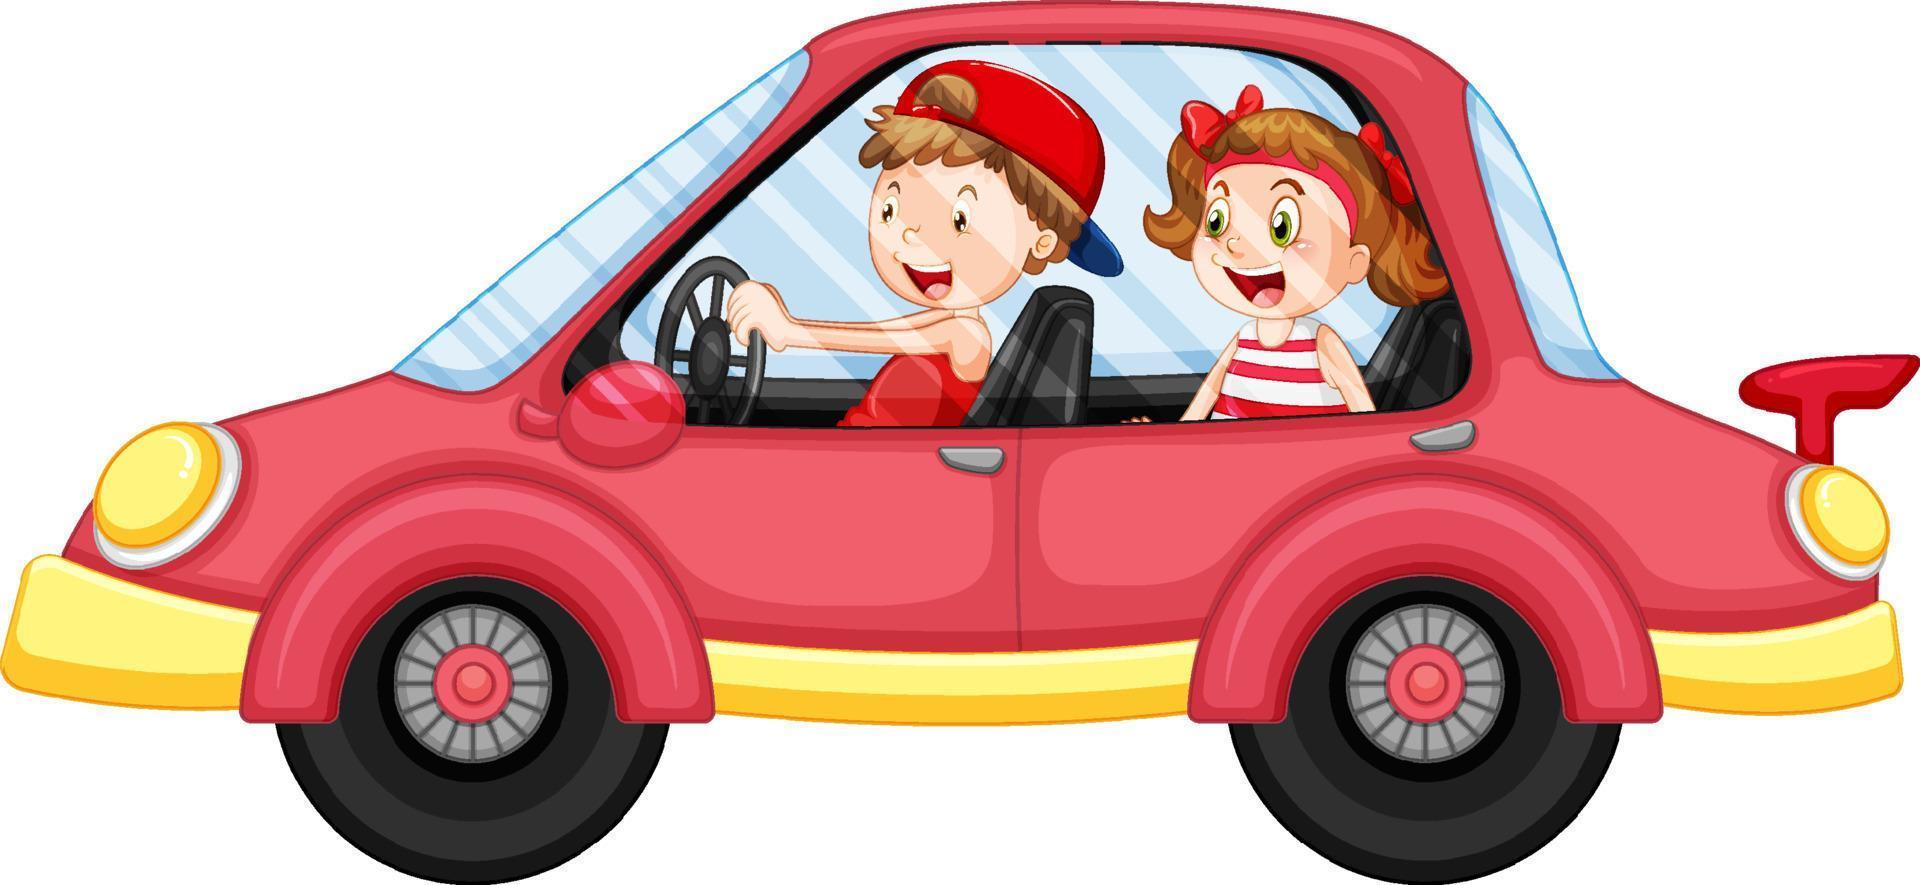 barn i en röd bil i tecknad stil vektor